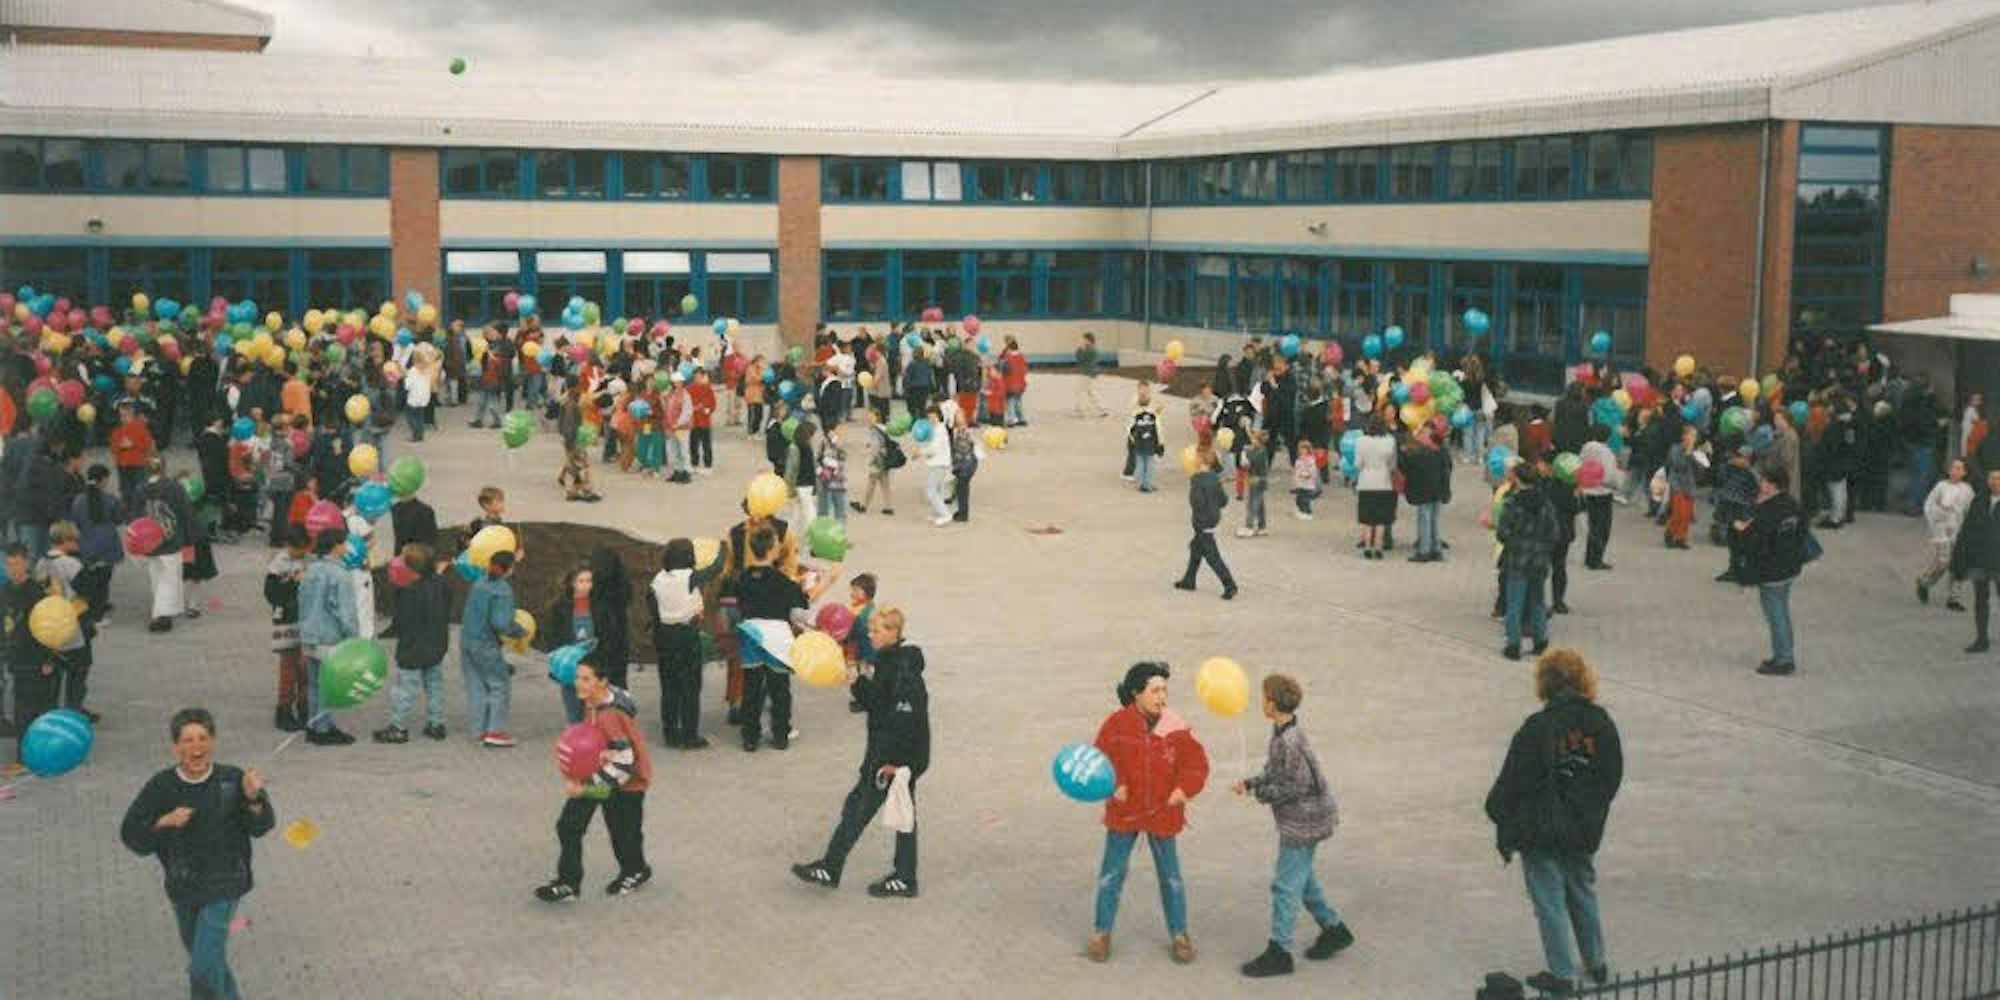 Bunte Ballons prägten das Bild bei einem Event in der Gesamtschule Weilerswist, die vor 25 Jahren ihren Schulbetrieb startete.